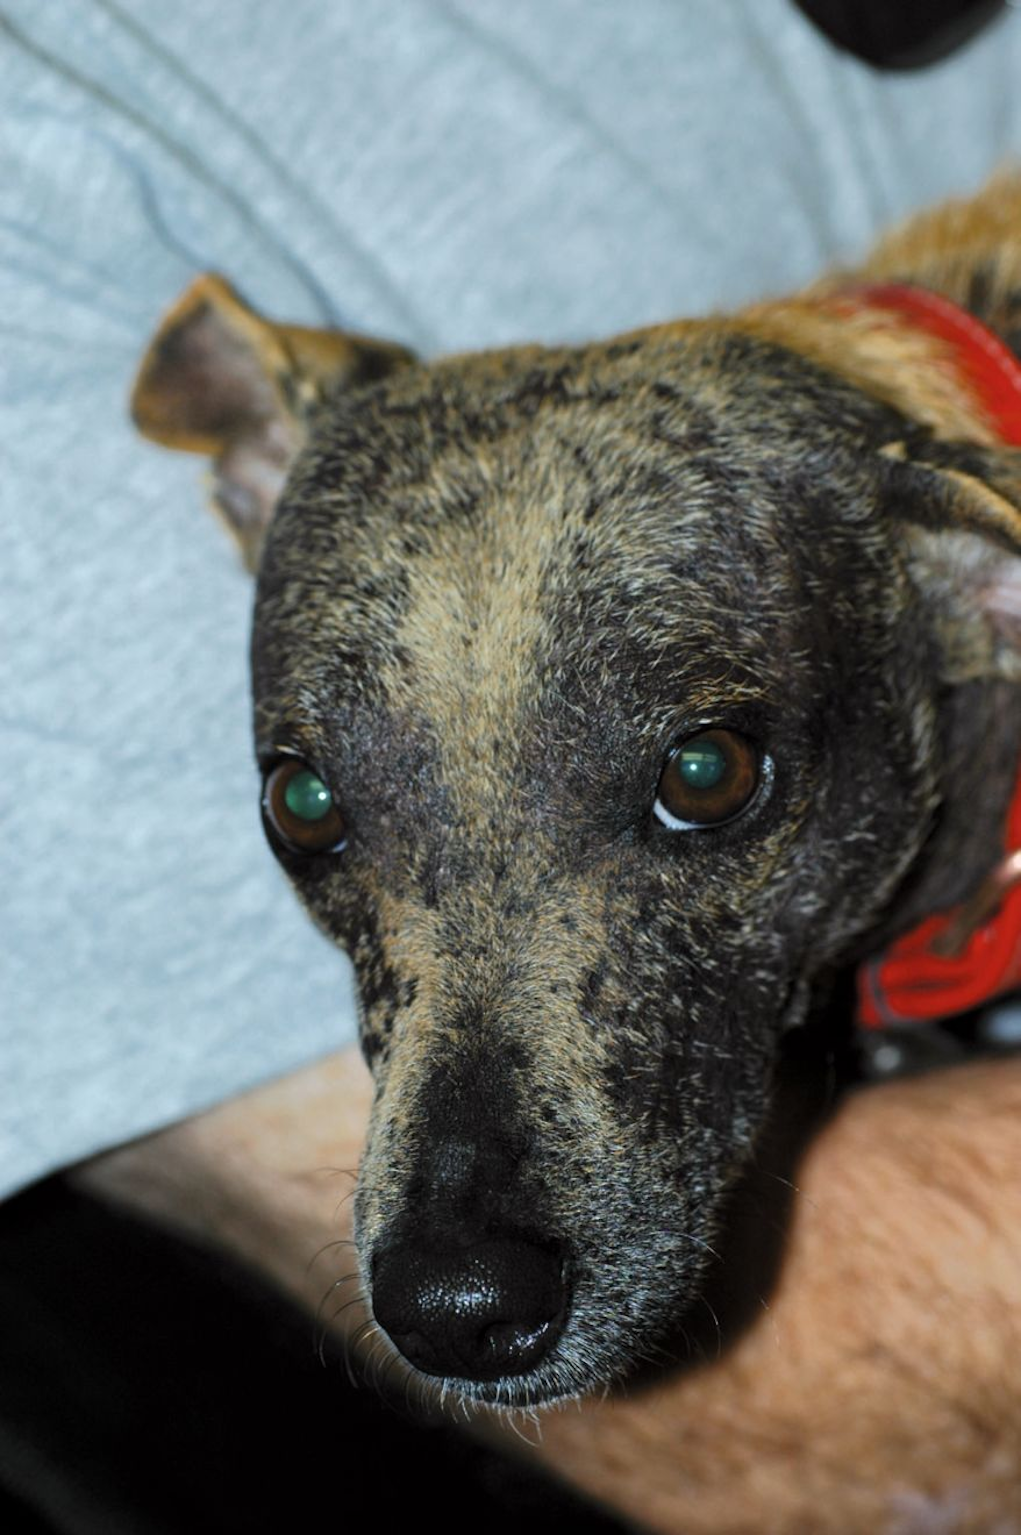 Generalisierte Demodikose nach Behandlung. Dieser Fundhund wurde erfolgreich gegen Demodikose behandelt und lebt heute ein glückliches, gesundes Leben